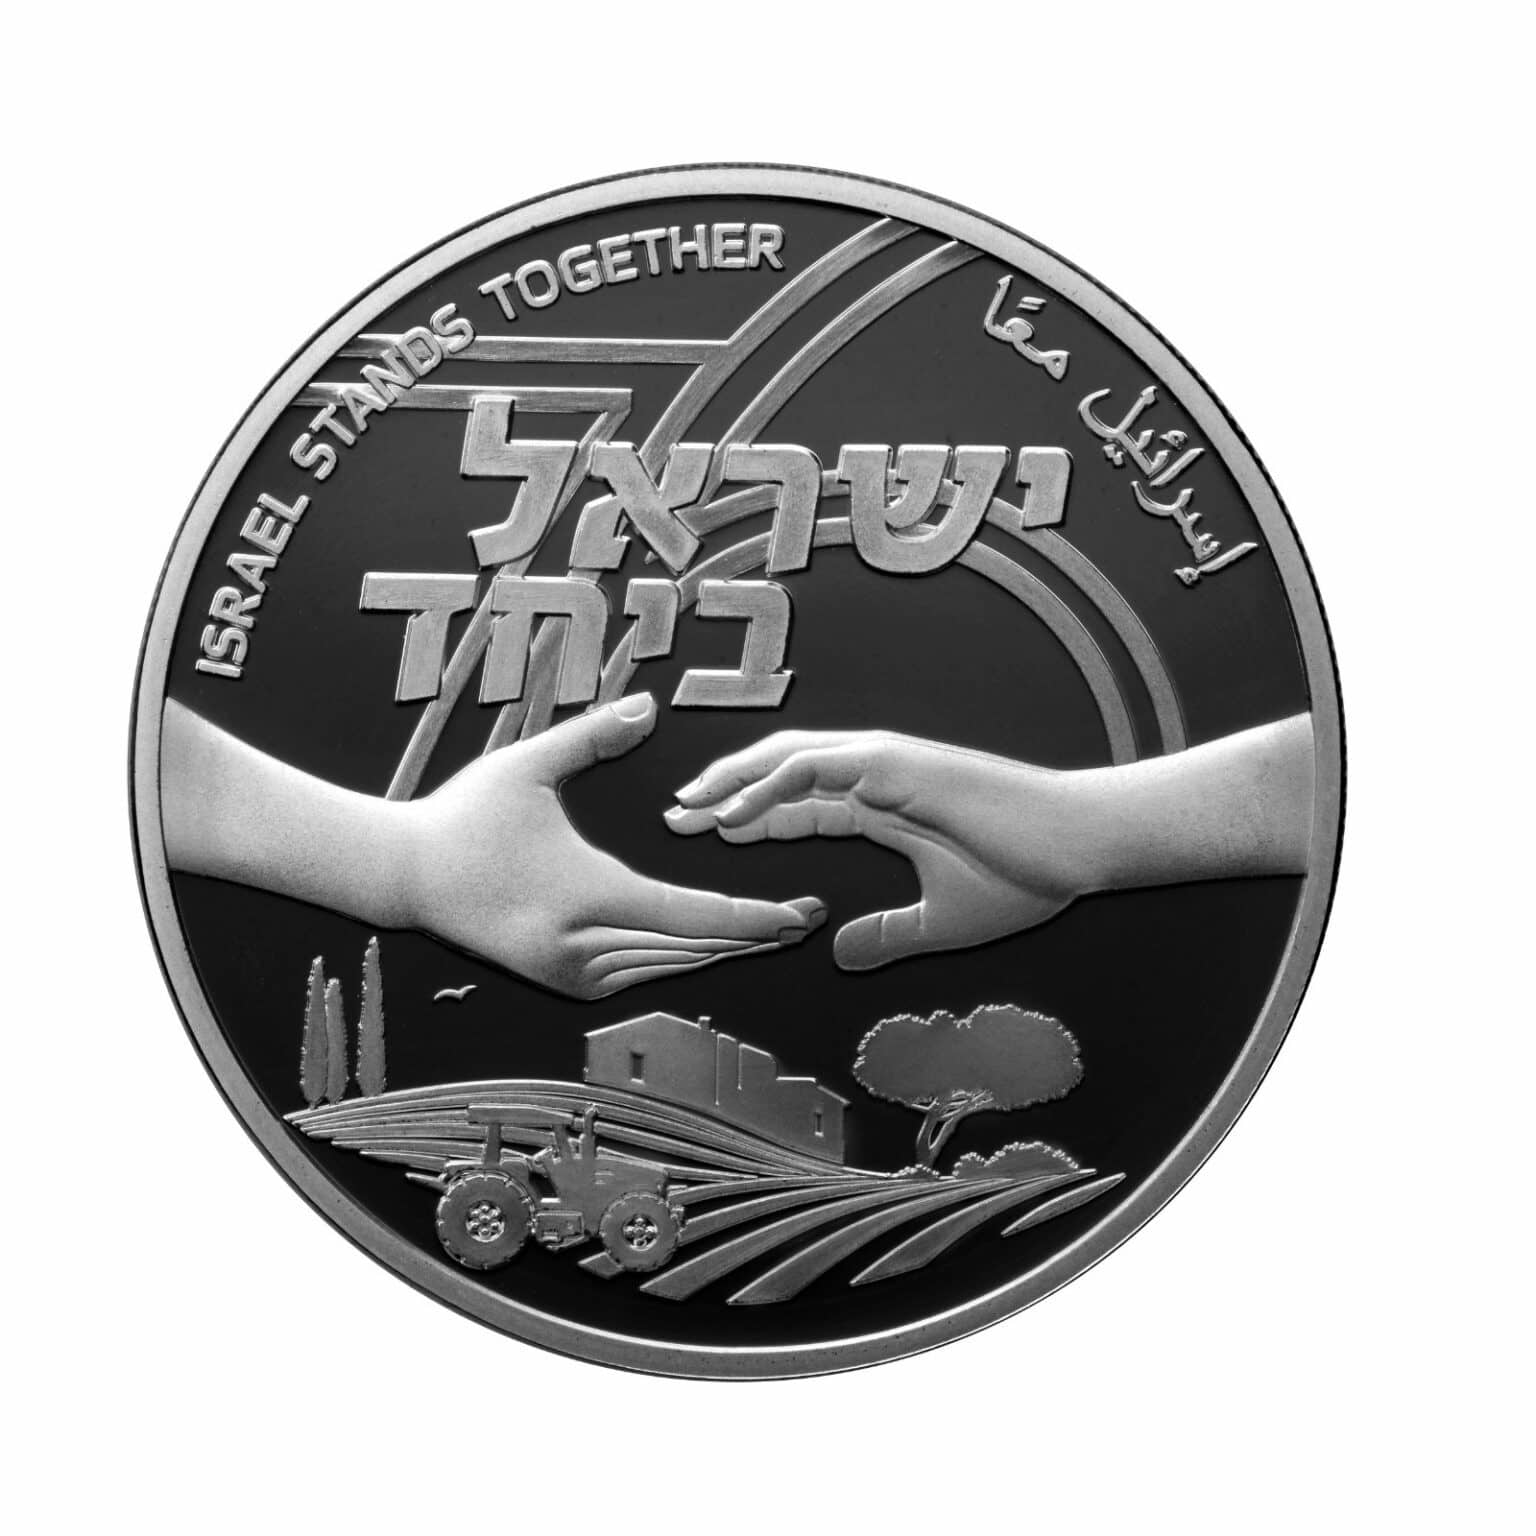 בנק ישראל: הושקו מטבעות "ישראל ביחד" ליום העצמאות ה-76 ואירועי אוקטובר